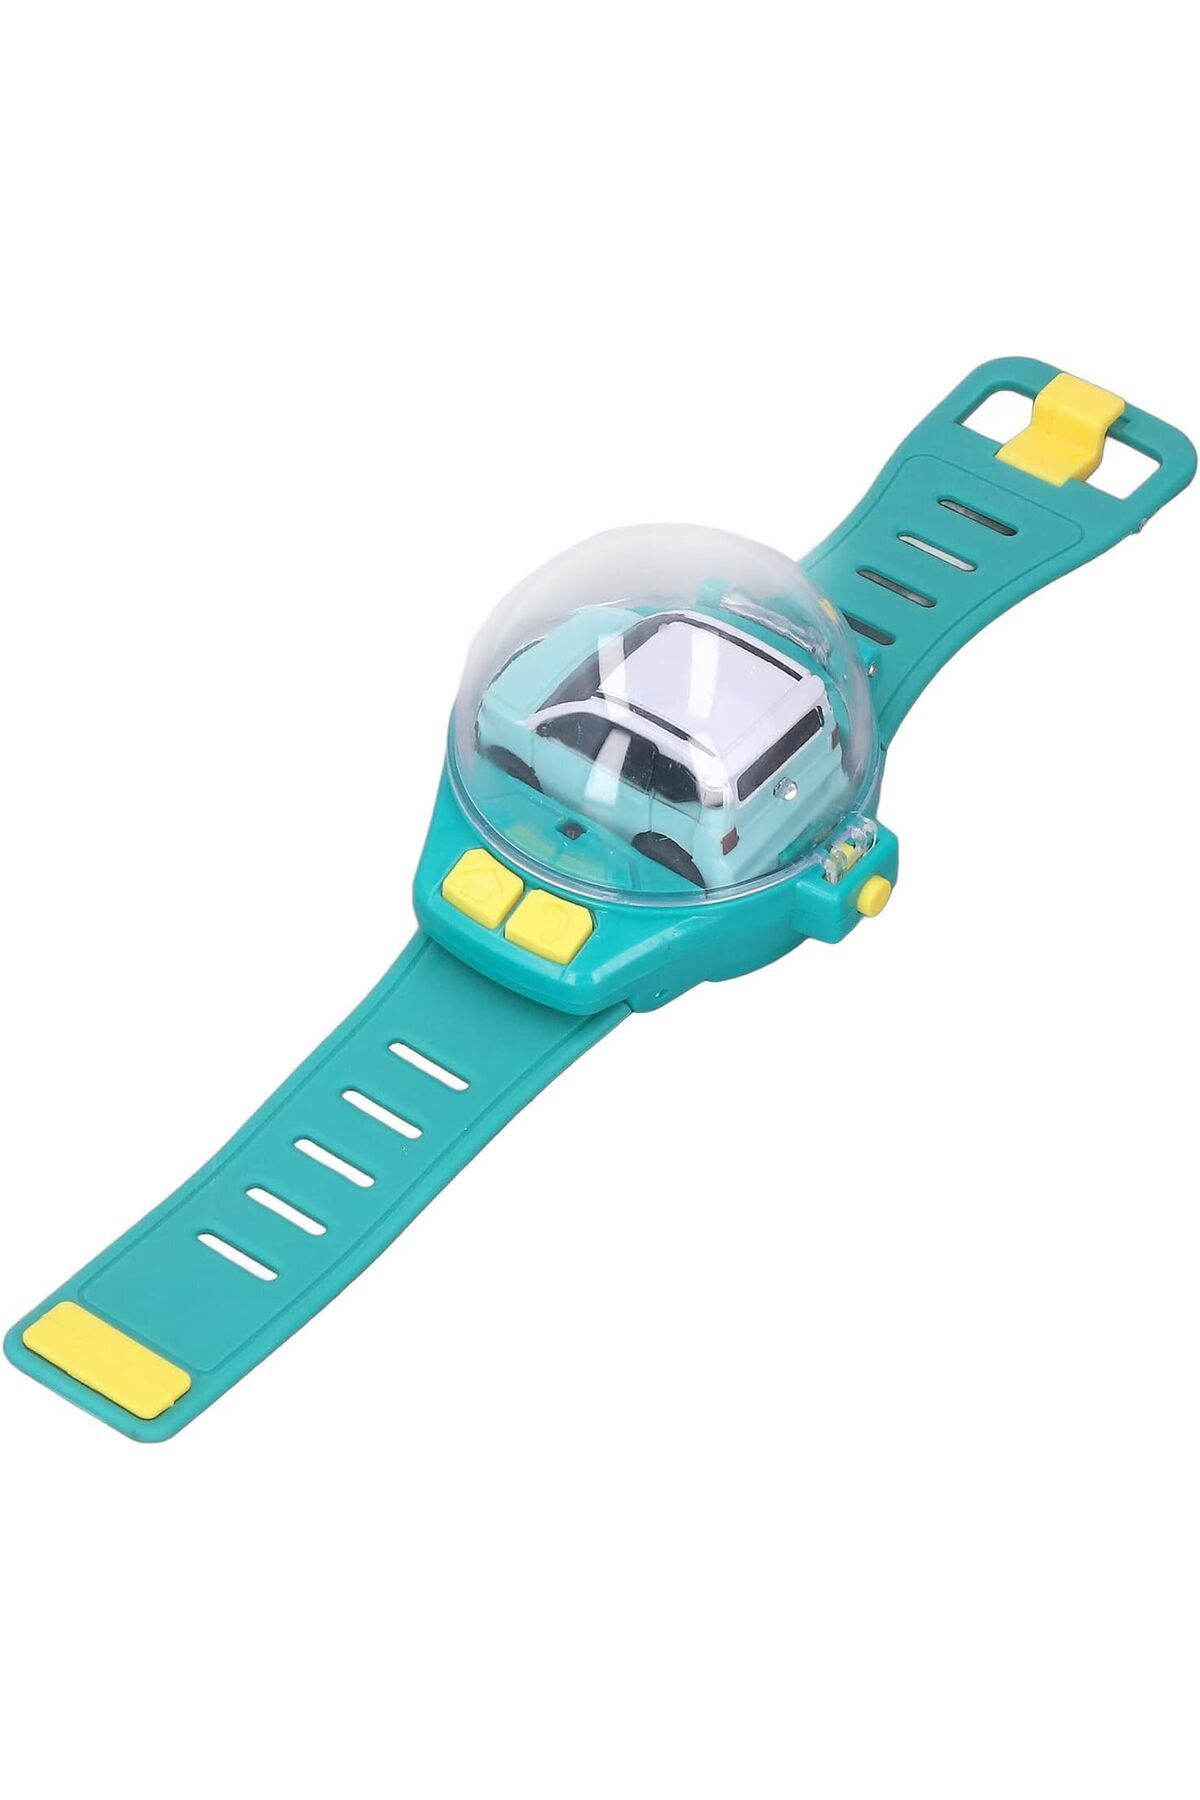 AZEM Uzaktan Kumandalı Şarjlı Araba Mini Saat Kontrollü Işıklı Hediye Oyuncak